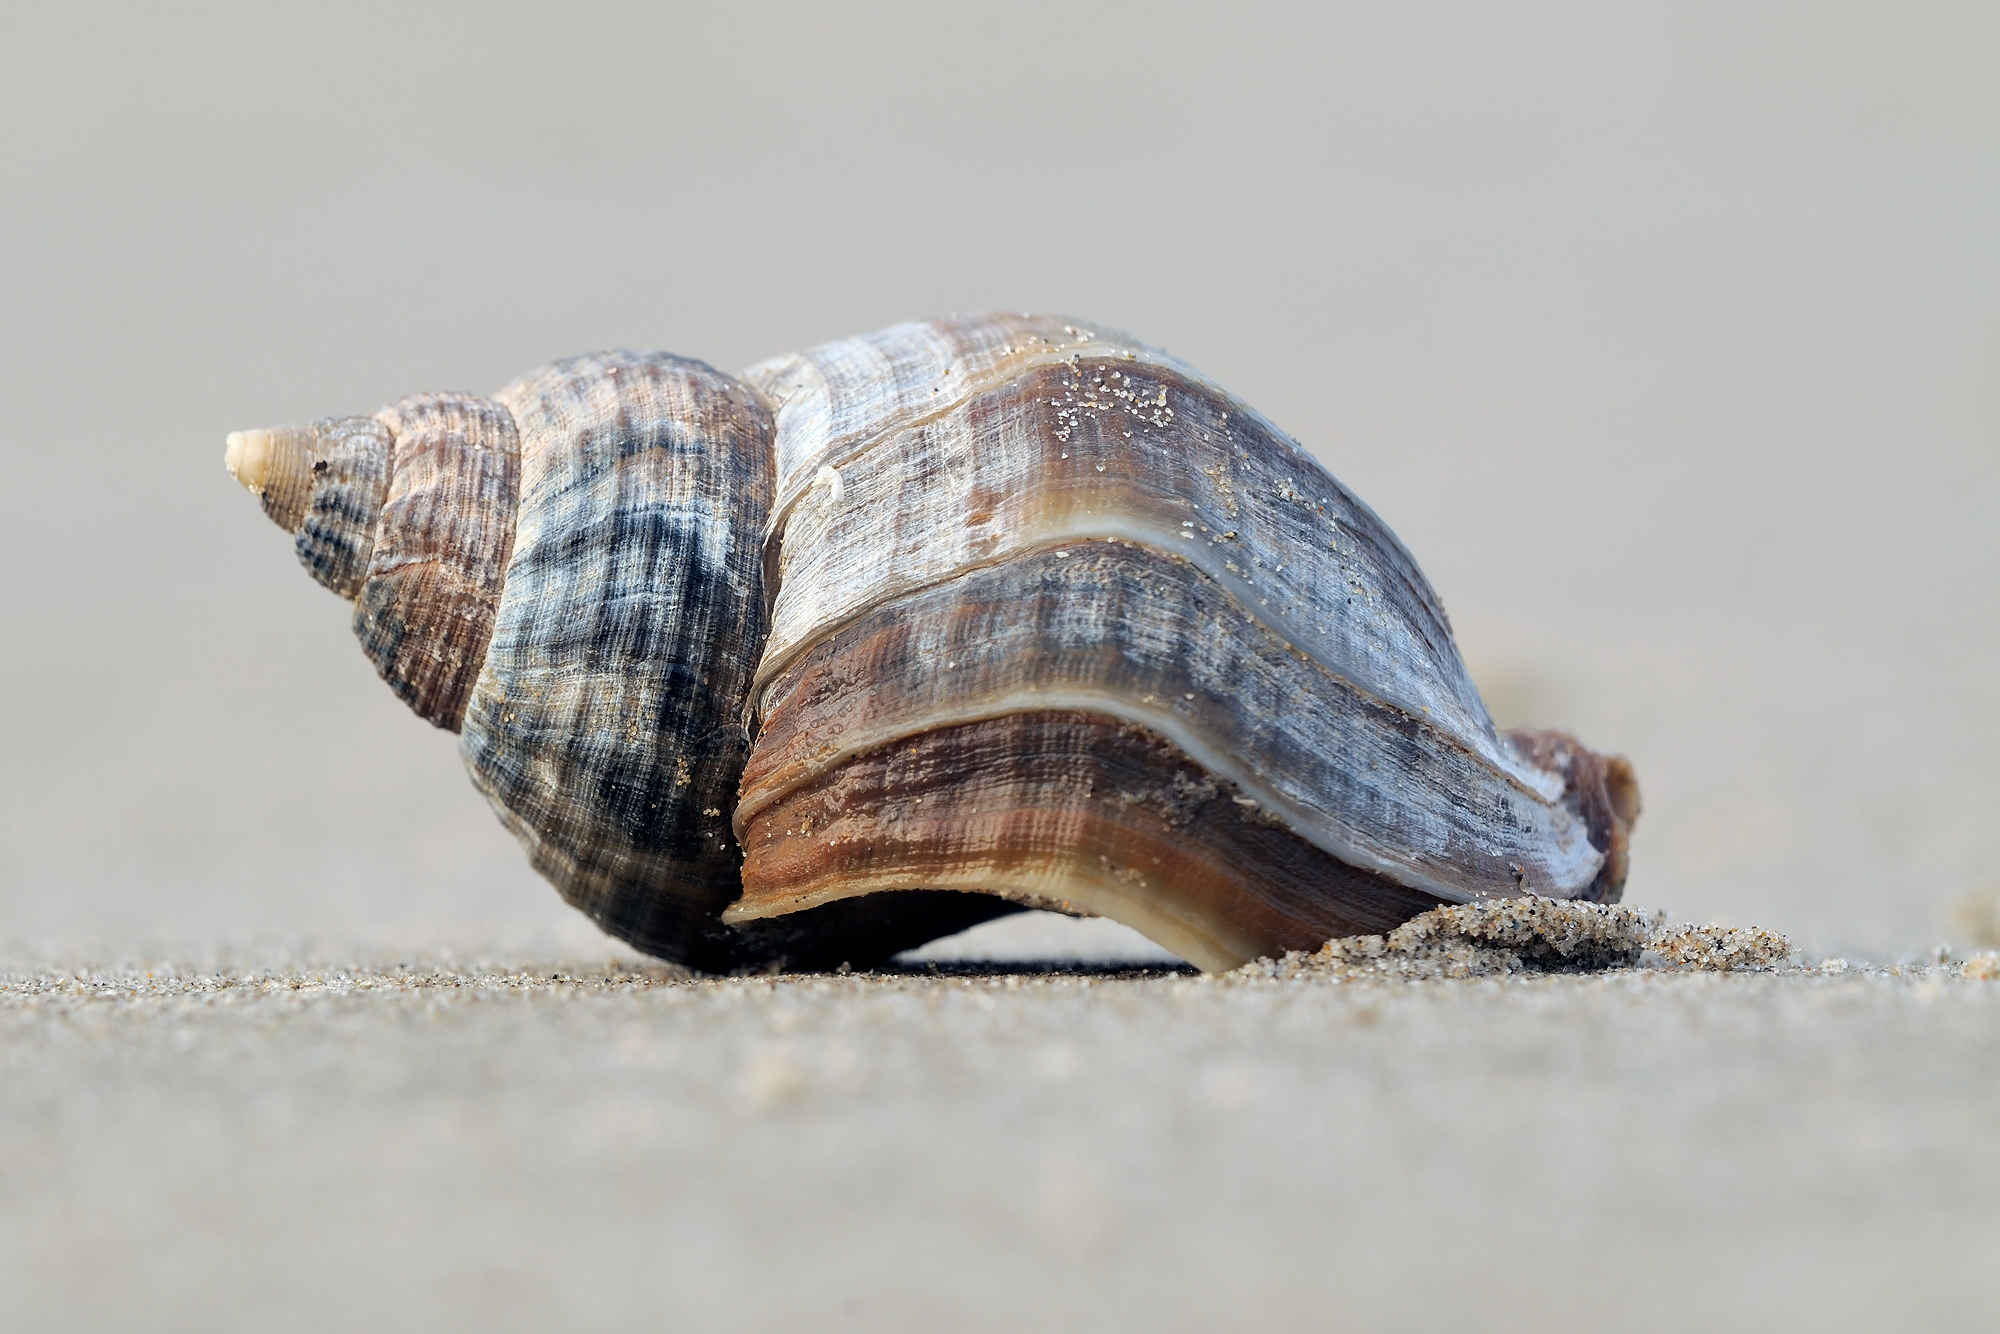 Aangespoelde schelp van een wulk (Buccinum undatum) op het zand van het strand in Wijk aan Zee